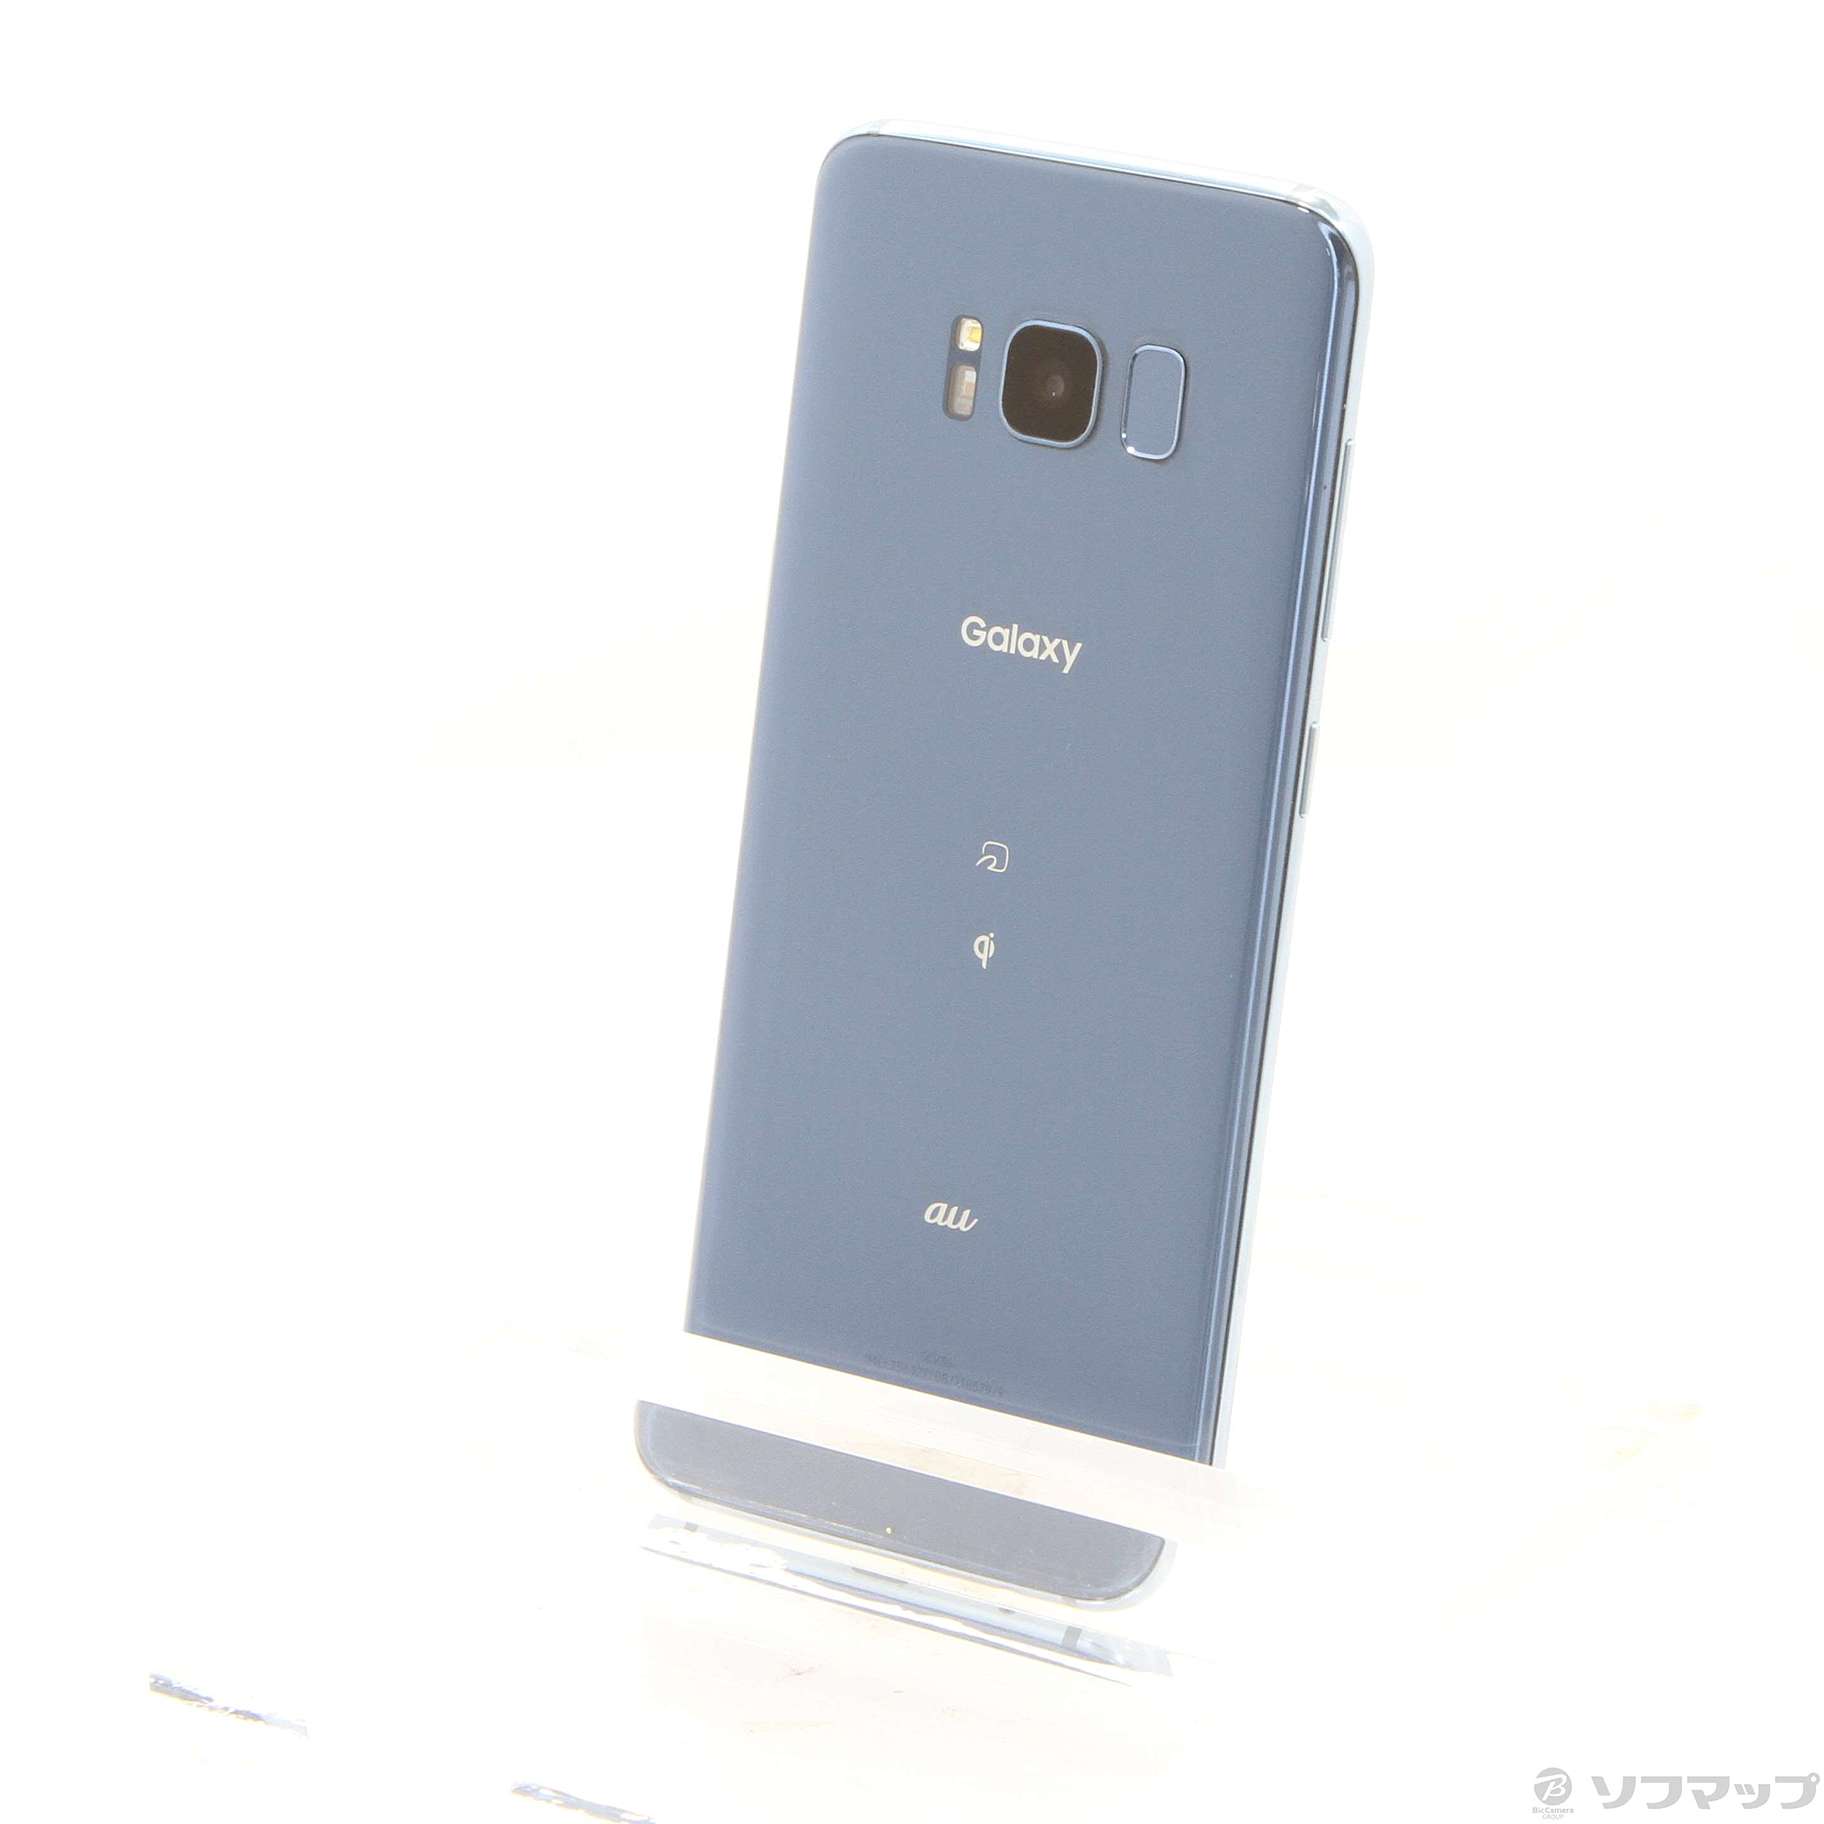 [hamudaiさま]Galaxy s8+ Silver 64GB SIMフリー